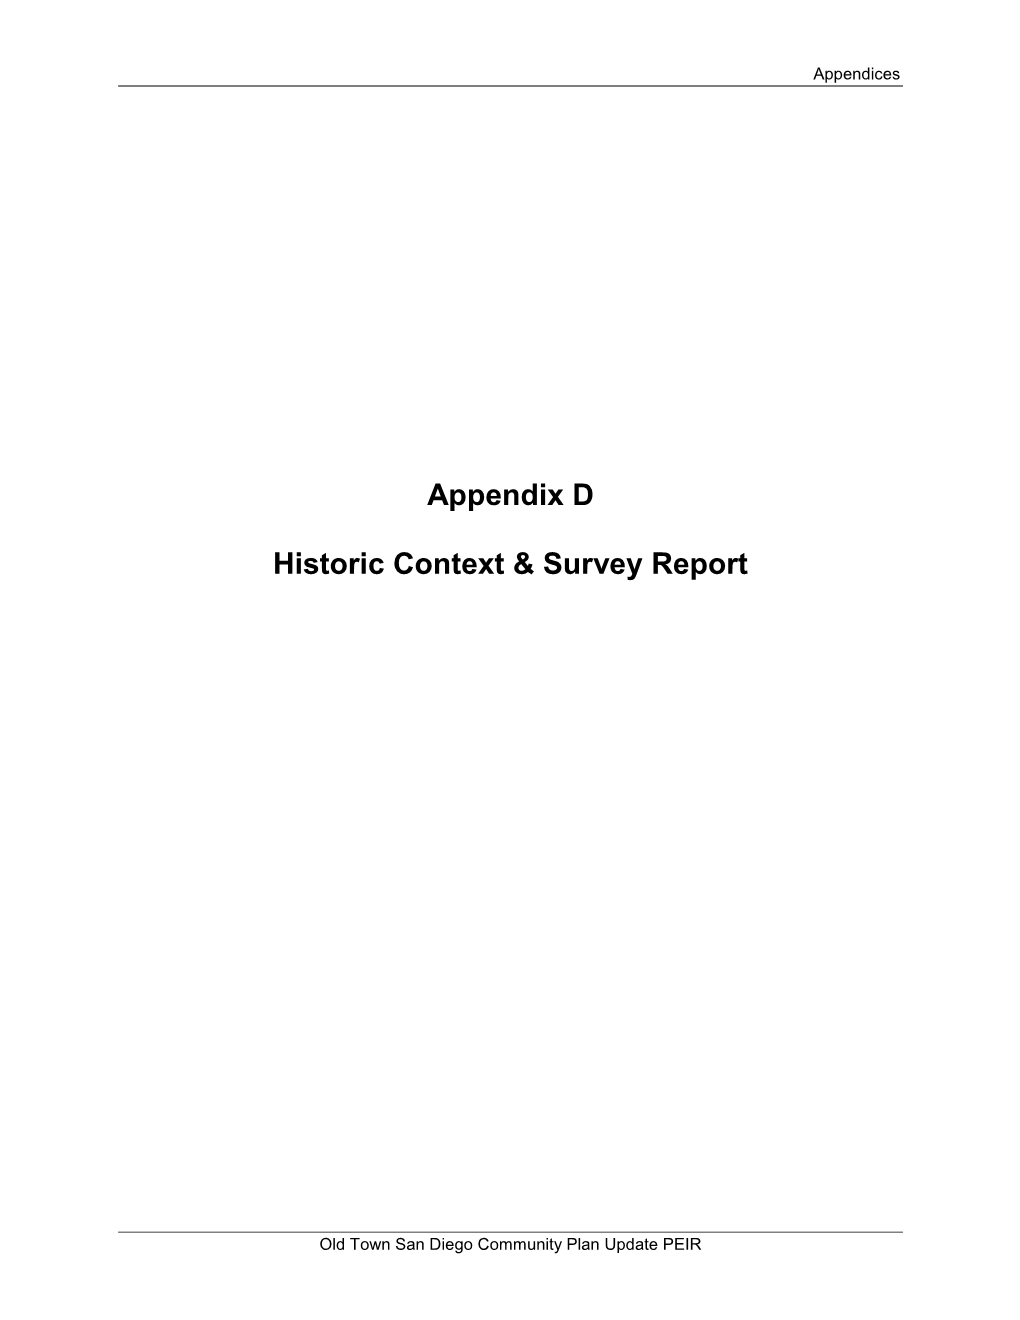 Appendix D Historic Context & Survey Report